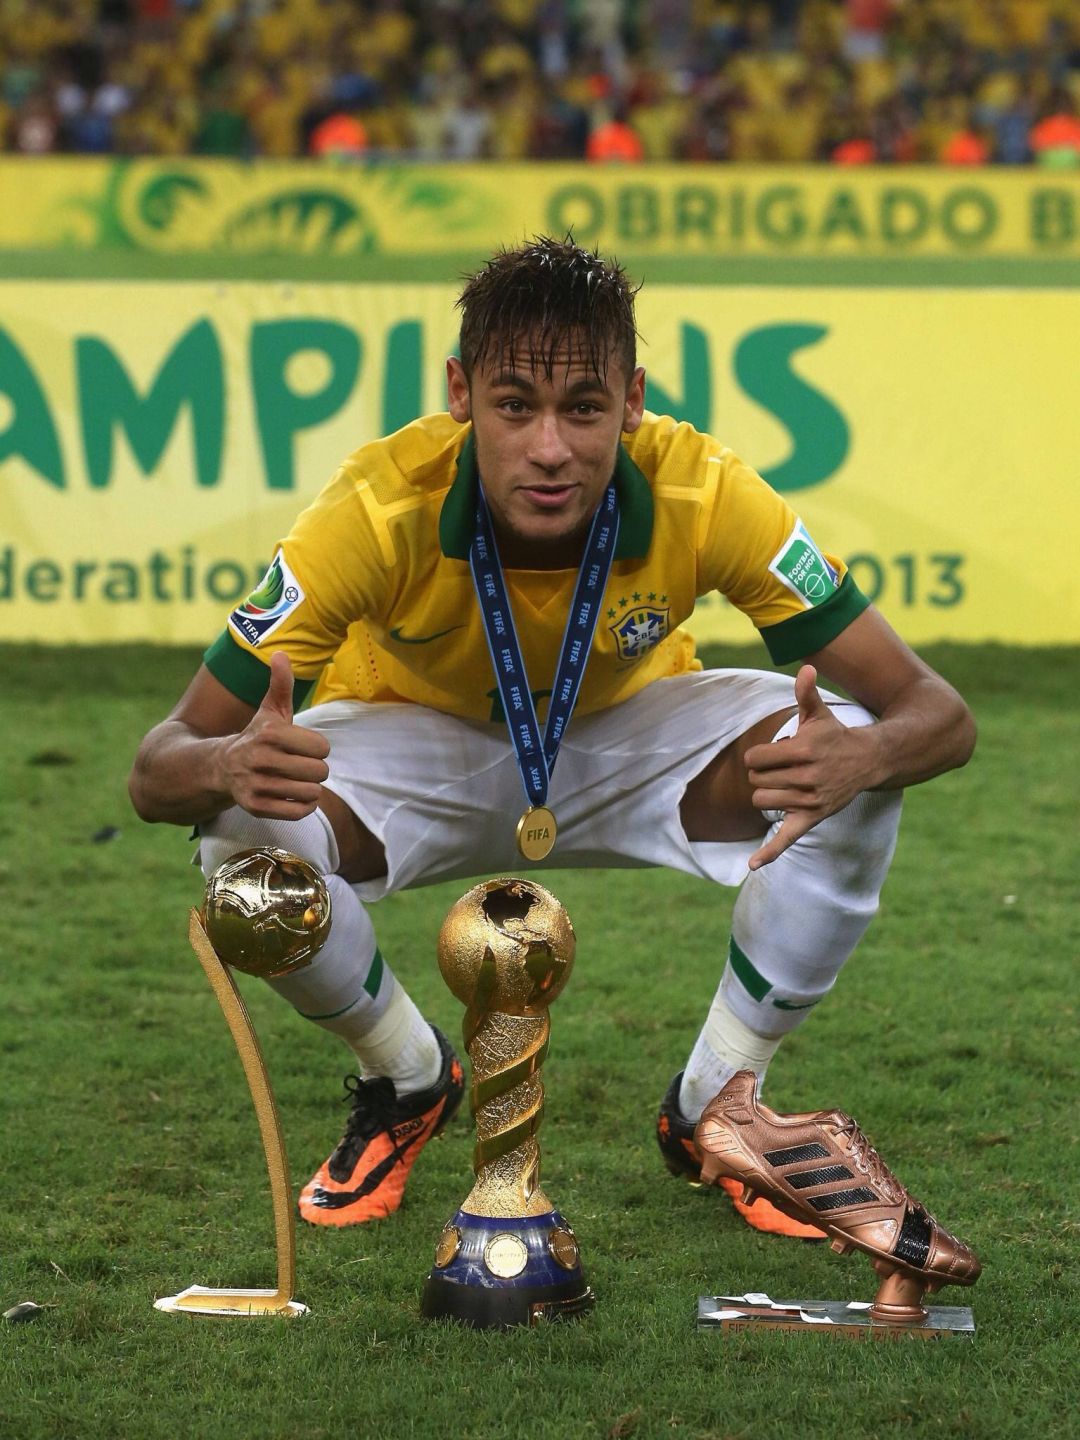 Neymar Wallpaper Hd - Neymar Copa Confederaciones 2013 , HD Wallpaper & Backgrounds